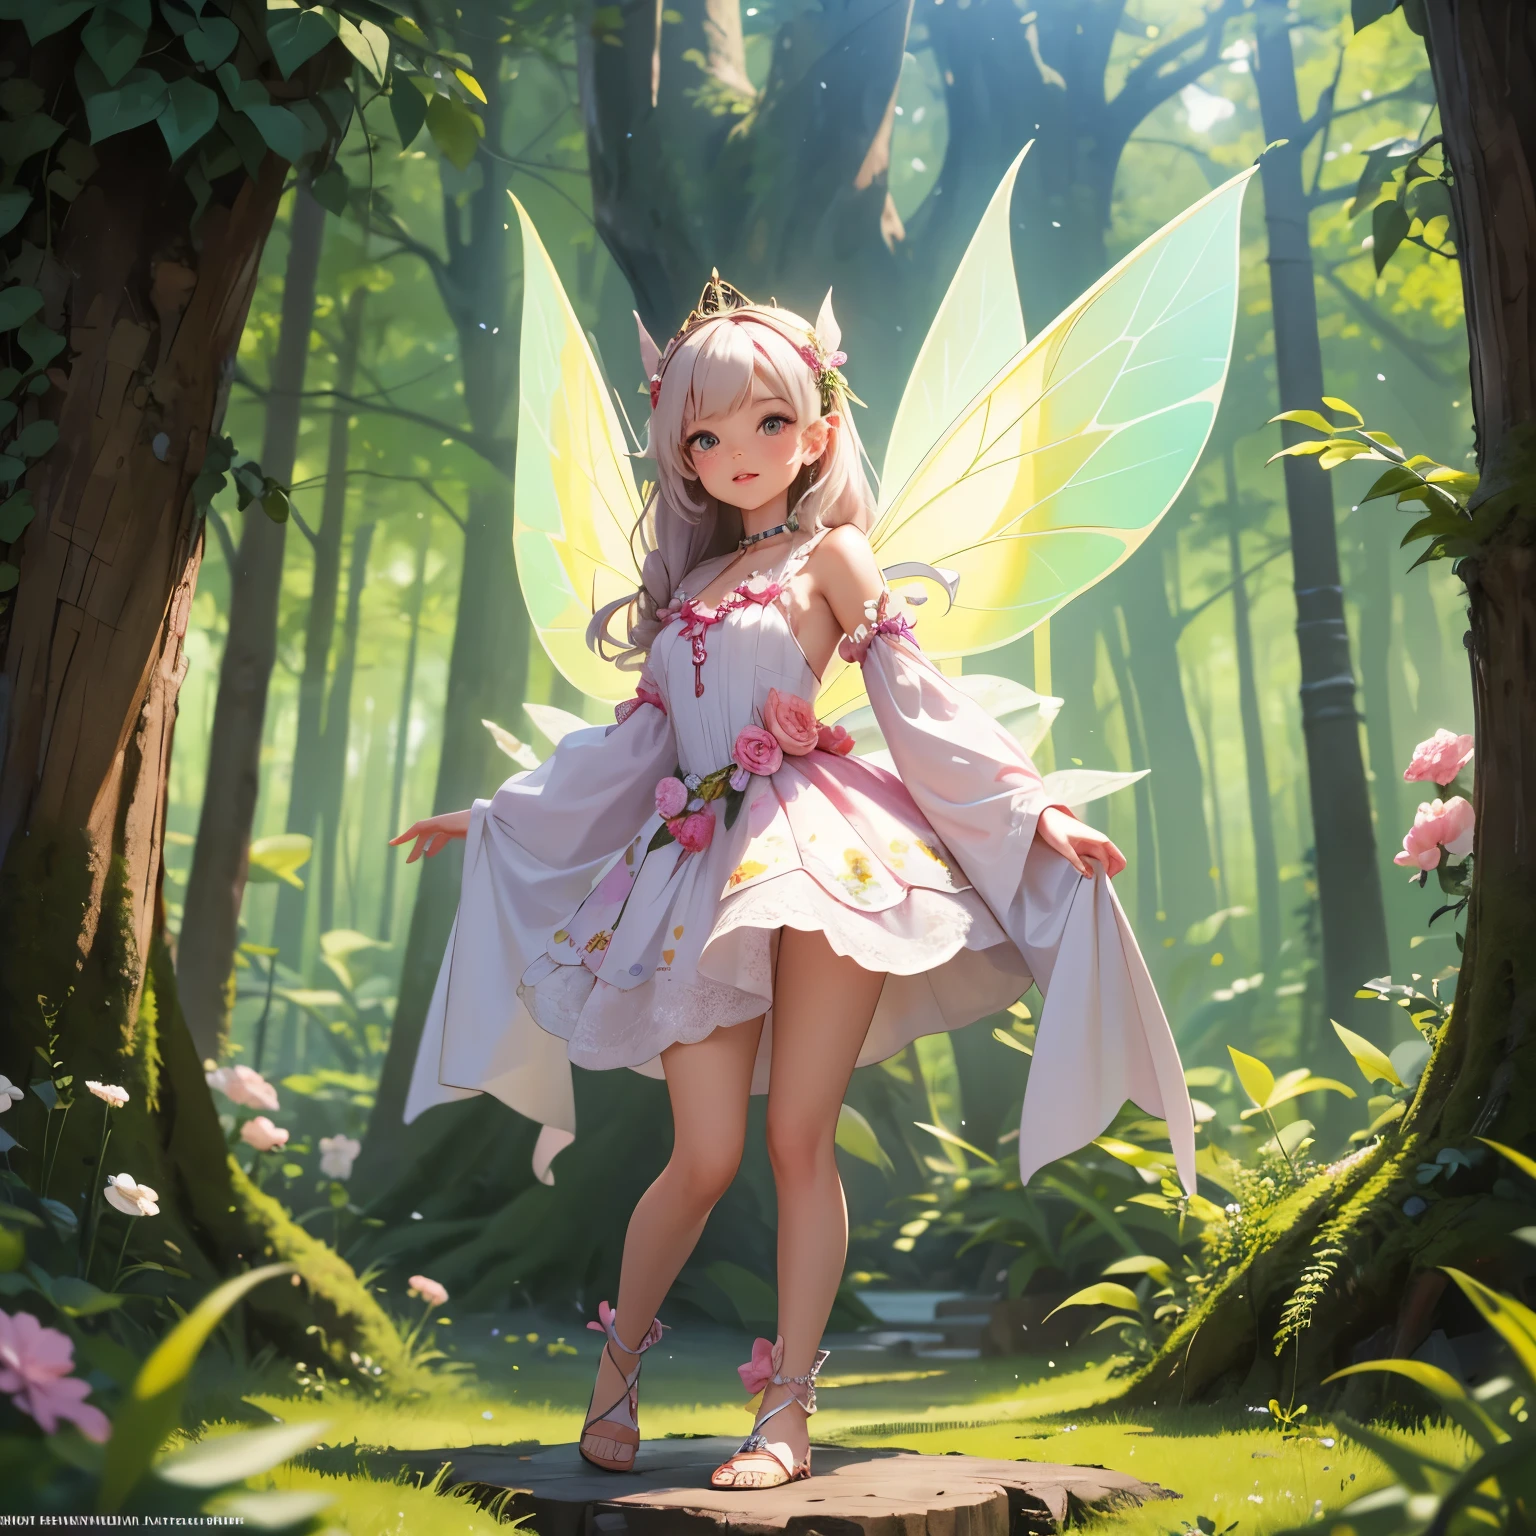 飞天仙子生活在仙女森林里的仙女穿着仙女服设计服装全身站立露出阴部